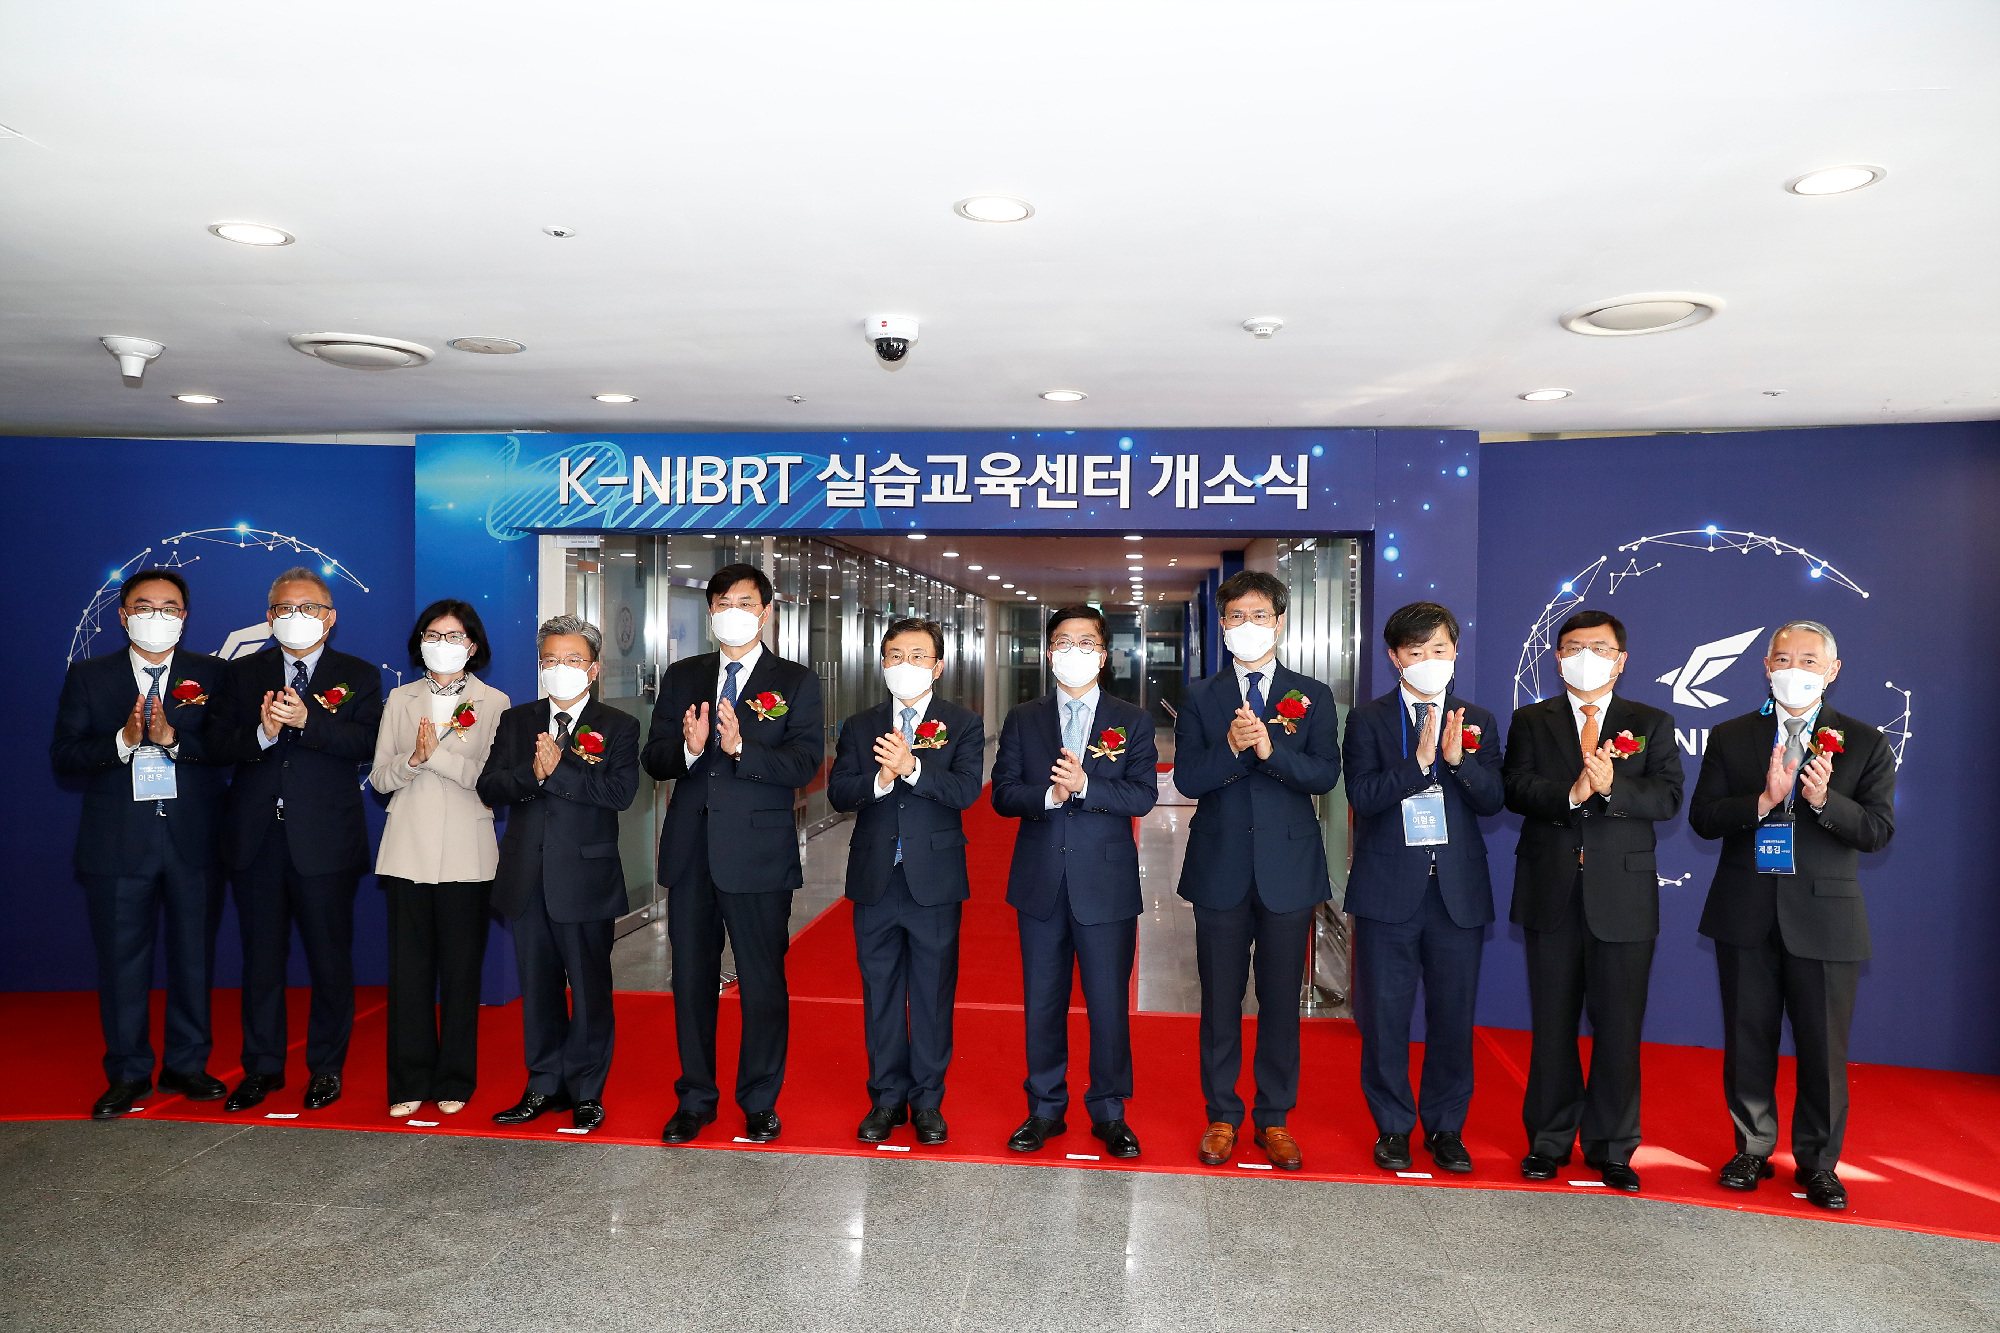 한국형 나이버트(K-NIBRT), 이론교육에 실습을 더해 바이오공정 전문인력 양성한다! 사진11